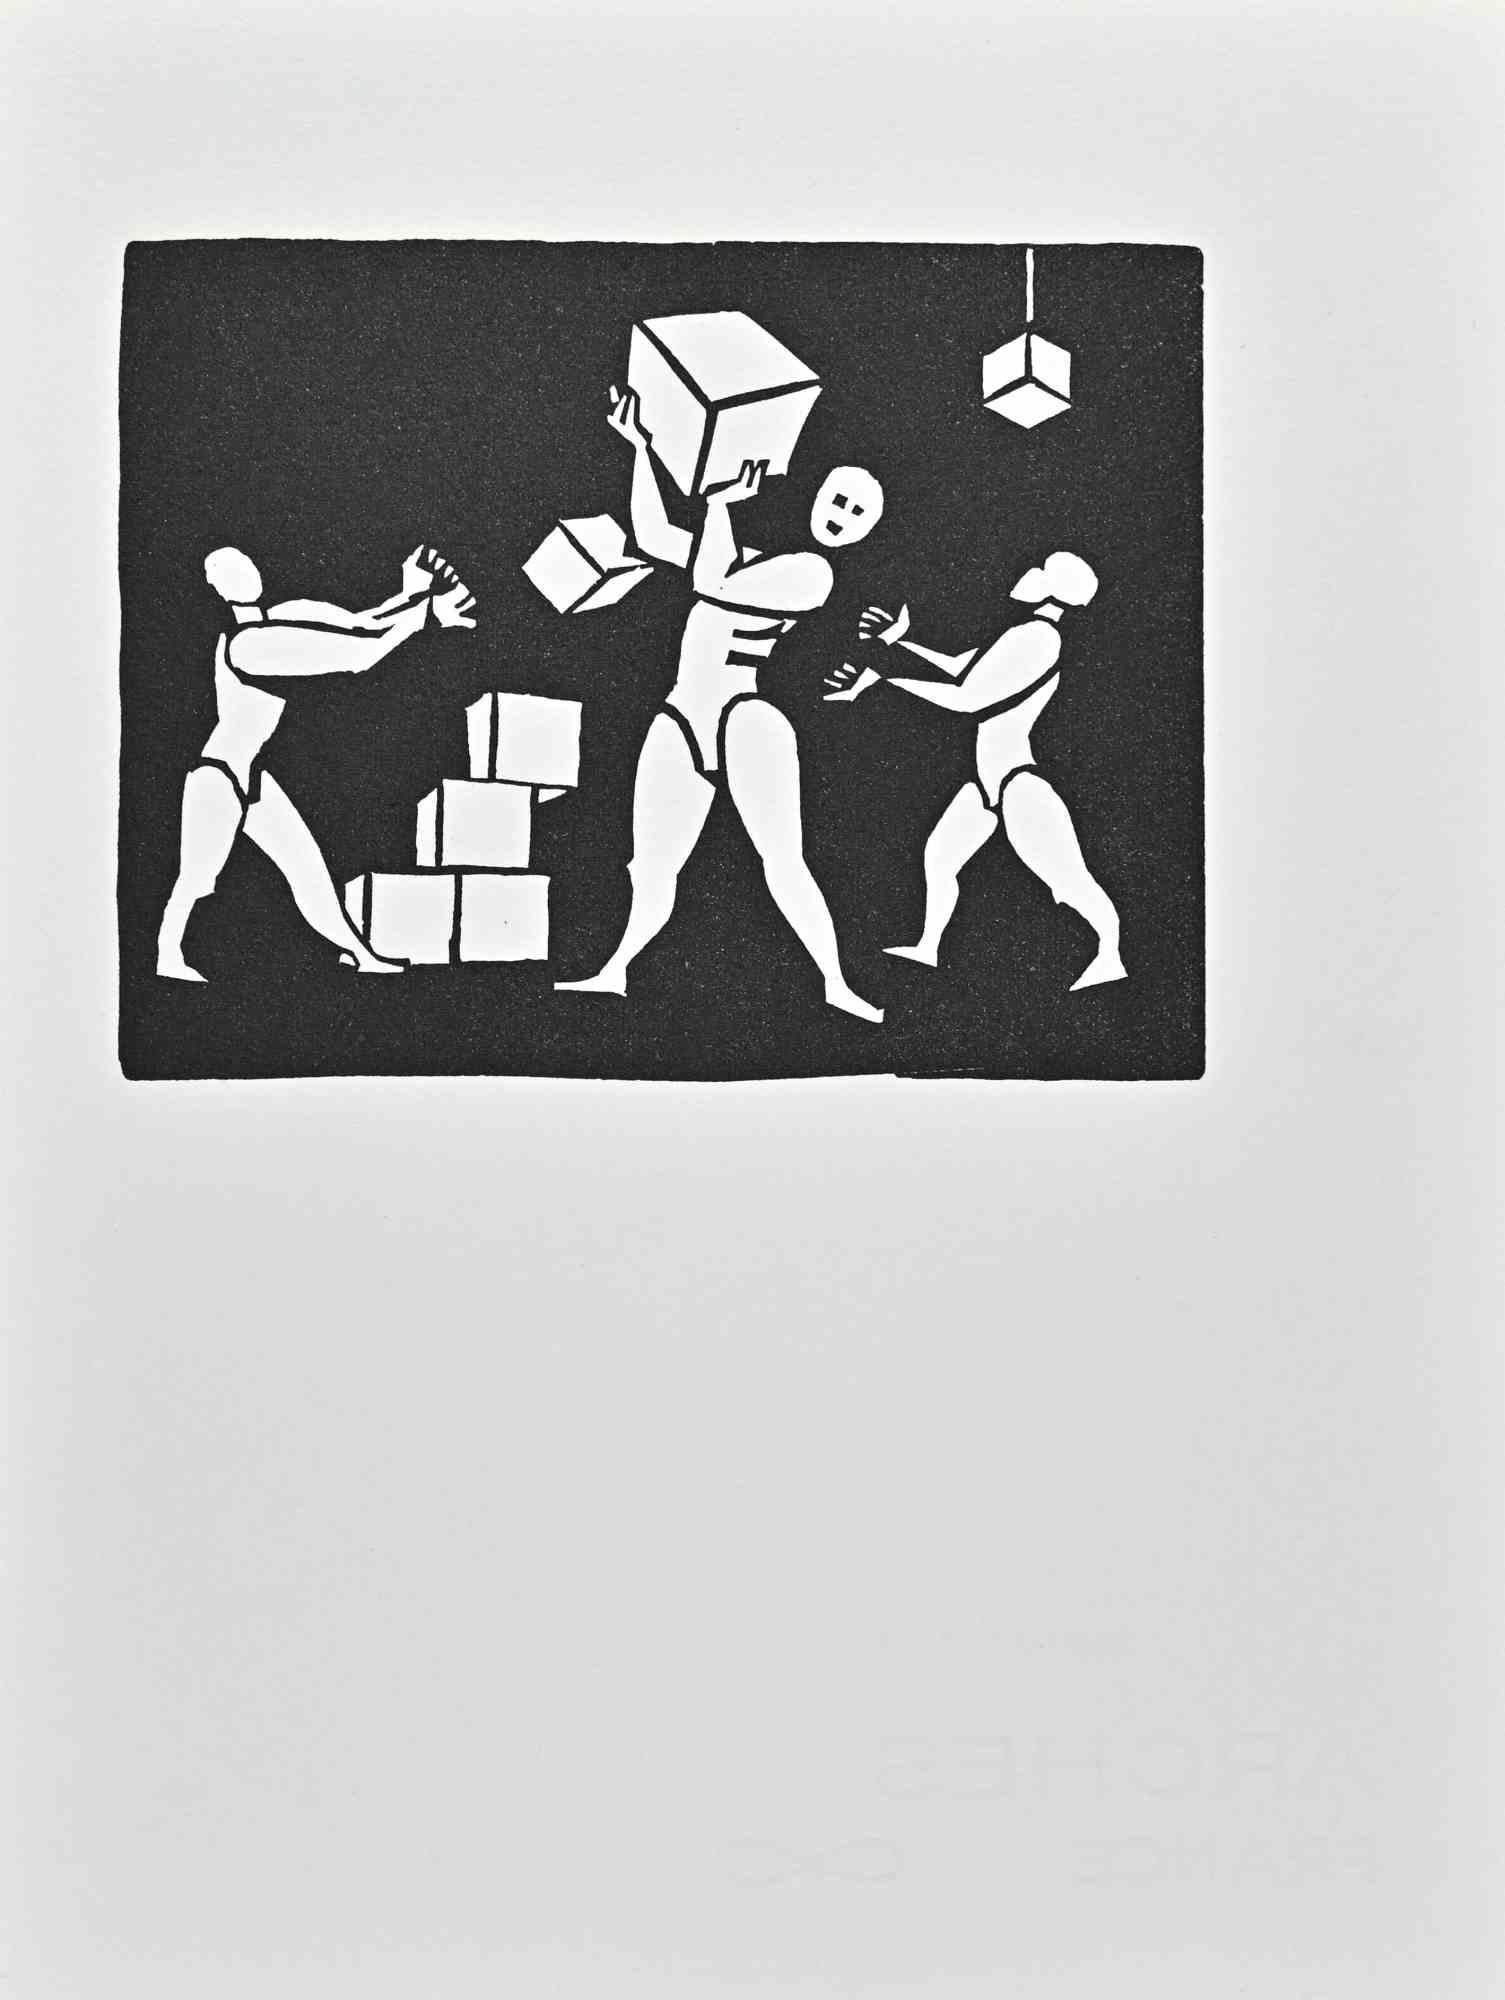 Bauhausbaukasten ist ein Linolschnitt von Albert Flocon aus dem Jahr 1987.

Gute Bedingungen.

Gehört zu der Serie " aus den "Scénographies au Bahuhaus. Hommage à Oskar Schlemmer en plusiers tableaux", Hrsg. "L'Atelier du Nombre d'Or", Paris, 1987. "